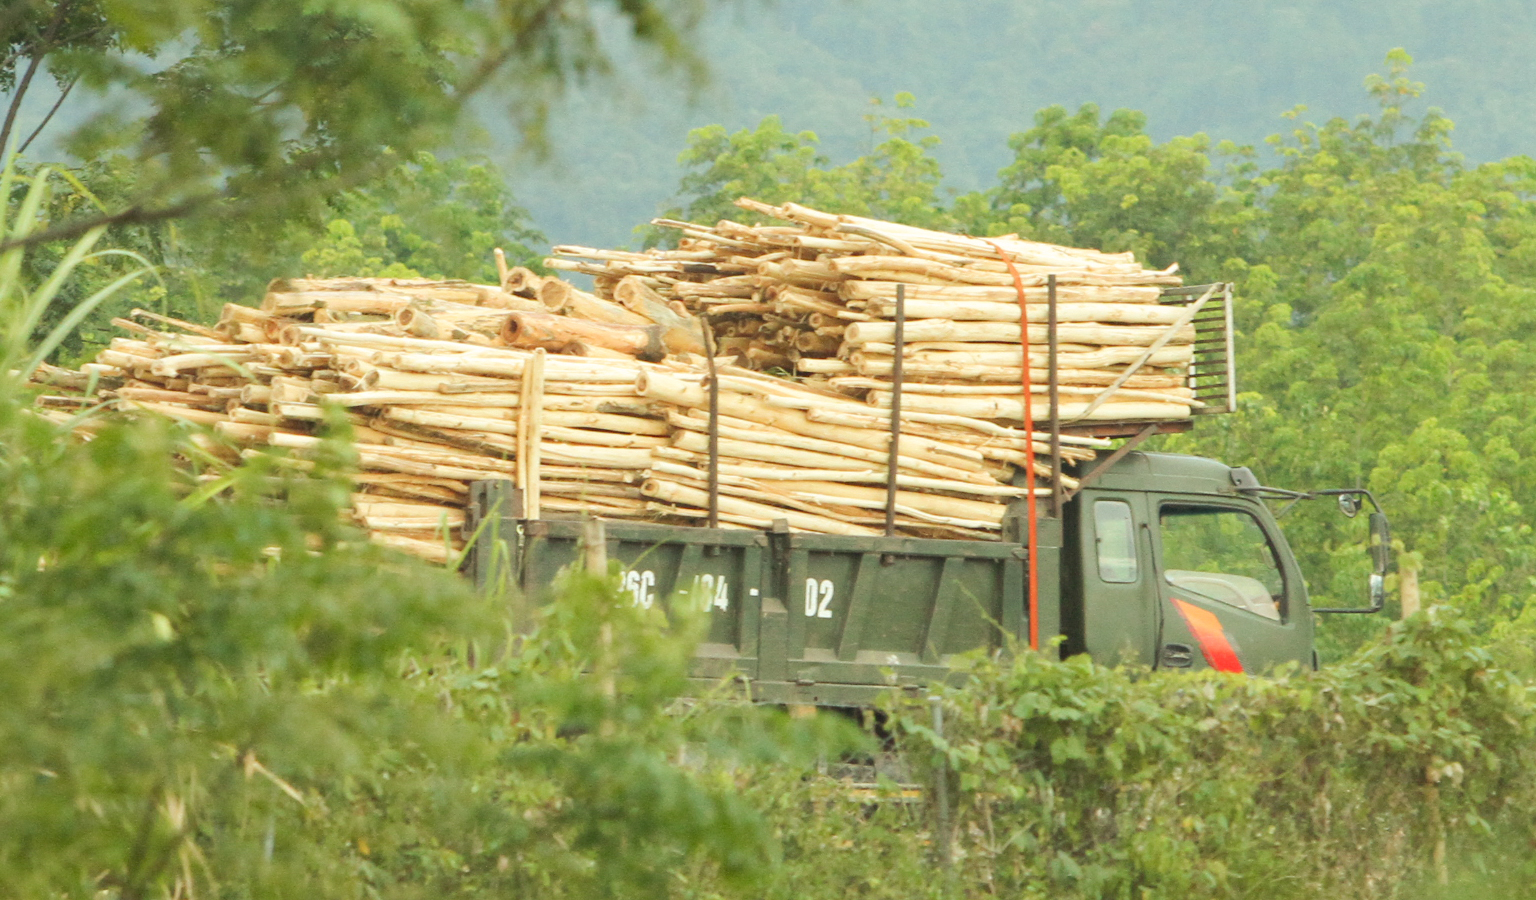 Chủ tịch UBND xã Xuân Hòa cho biết “Nhà máy sản xuất dăm gỗ Thanh Thành Đạt hoạt động trên khu đất rừng trồng cây là chưa được chuyển đổi mục đích sử dụng đất”(?) (Kỳ 3)